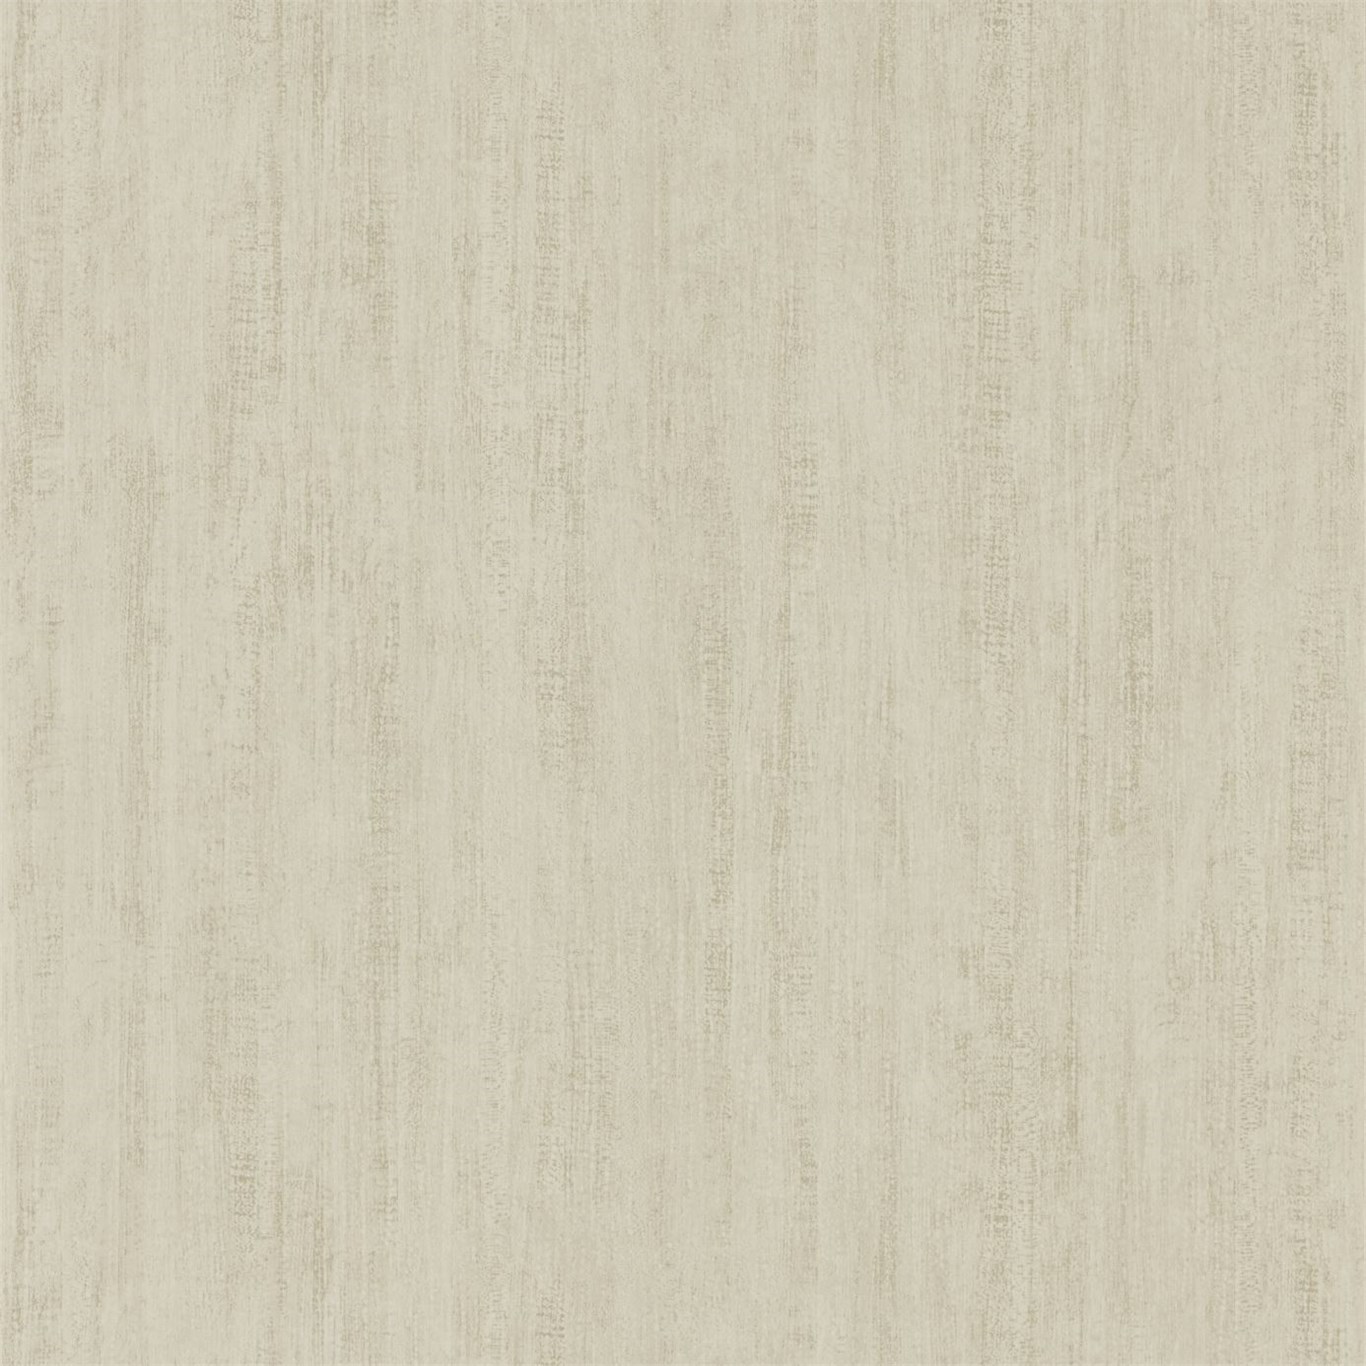 Wallpaper - Sanderson Woodland Walk Wallpapers Wildwood Linen